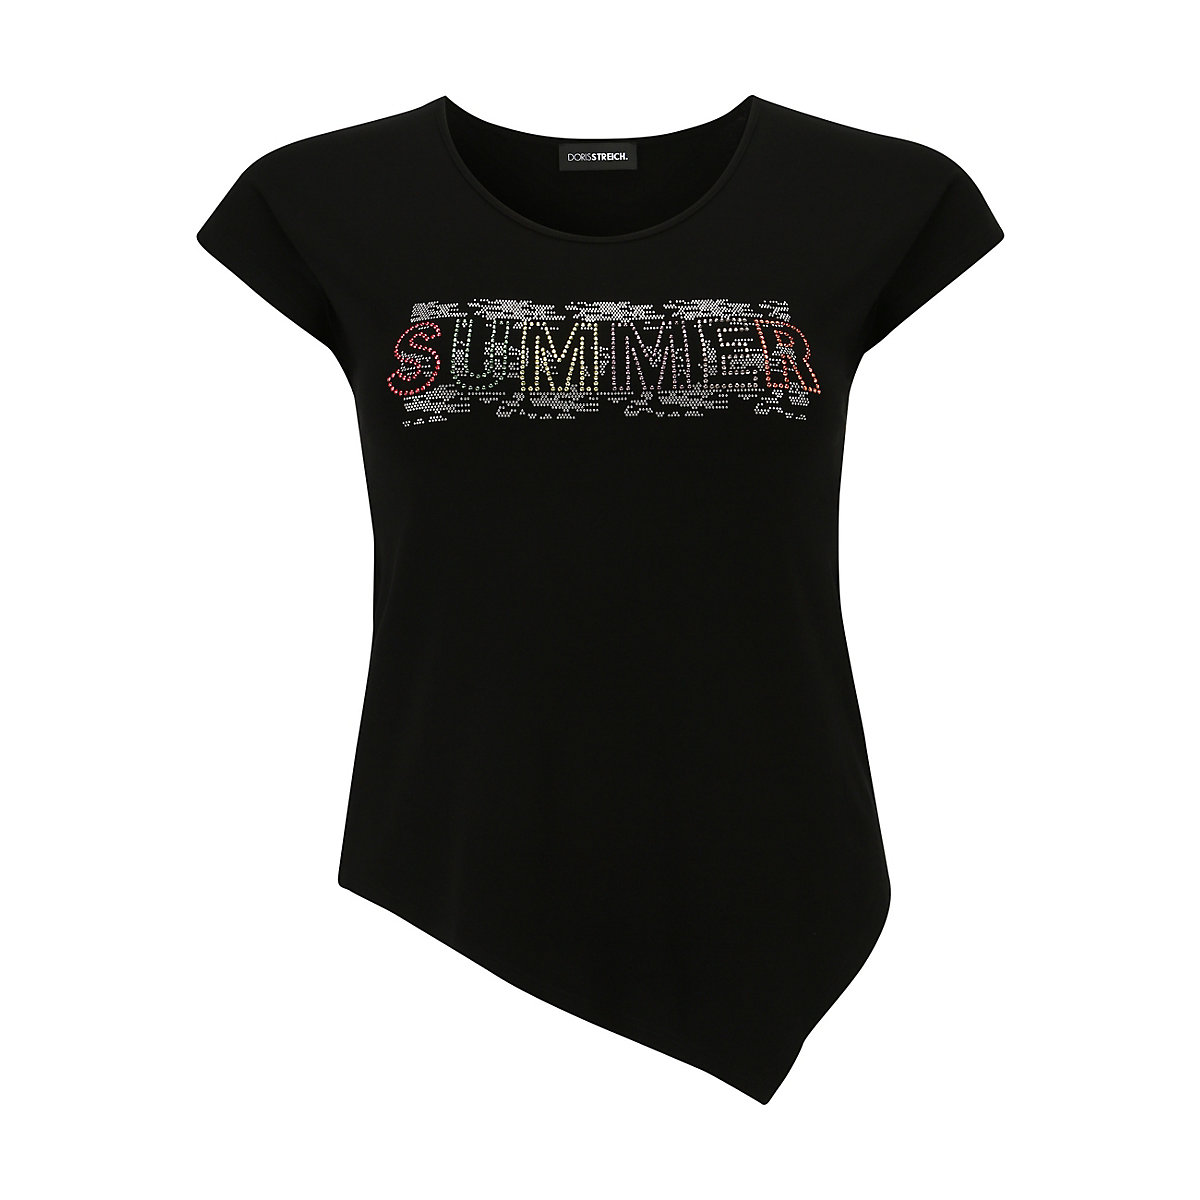 Doris Streich T-Shirt T-Shirt mit Plättchen-Motiv T-Shirts bunt